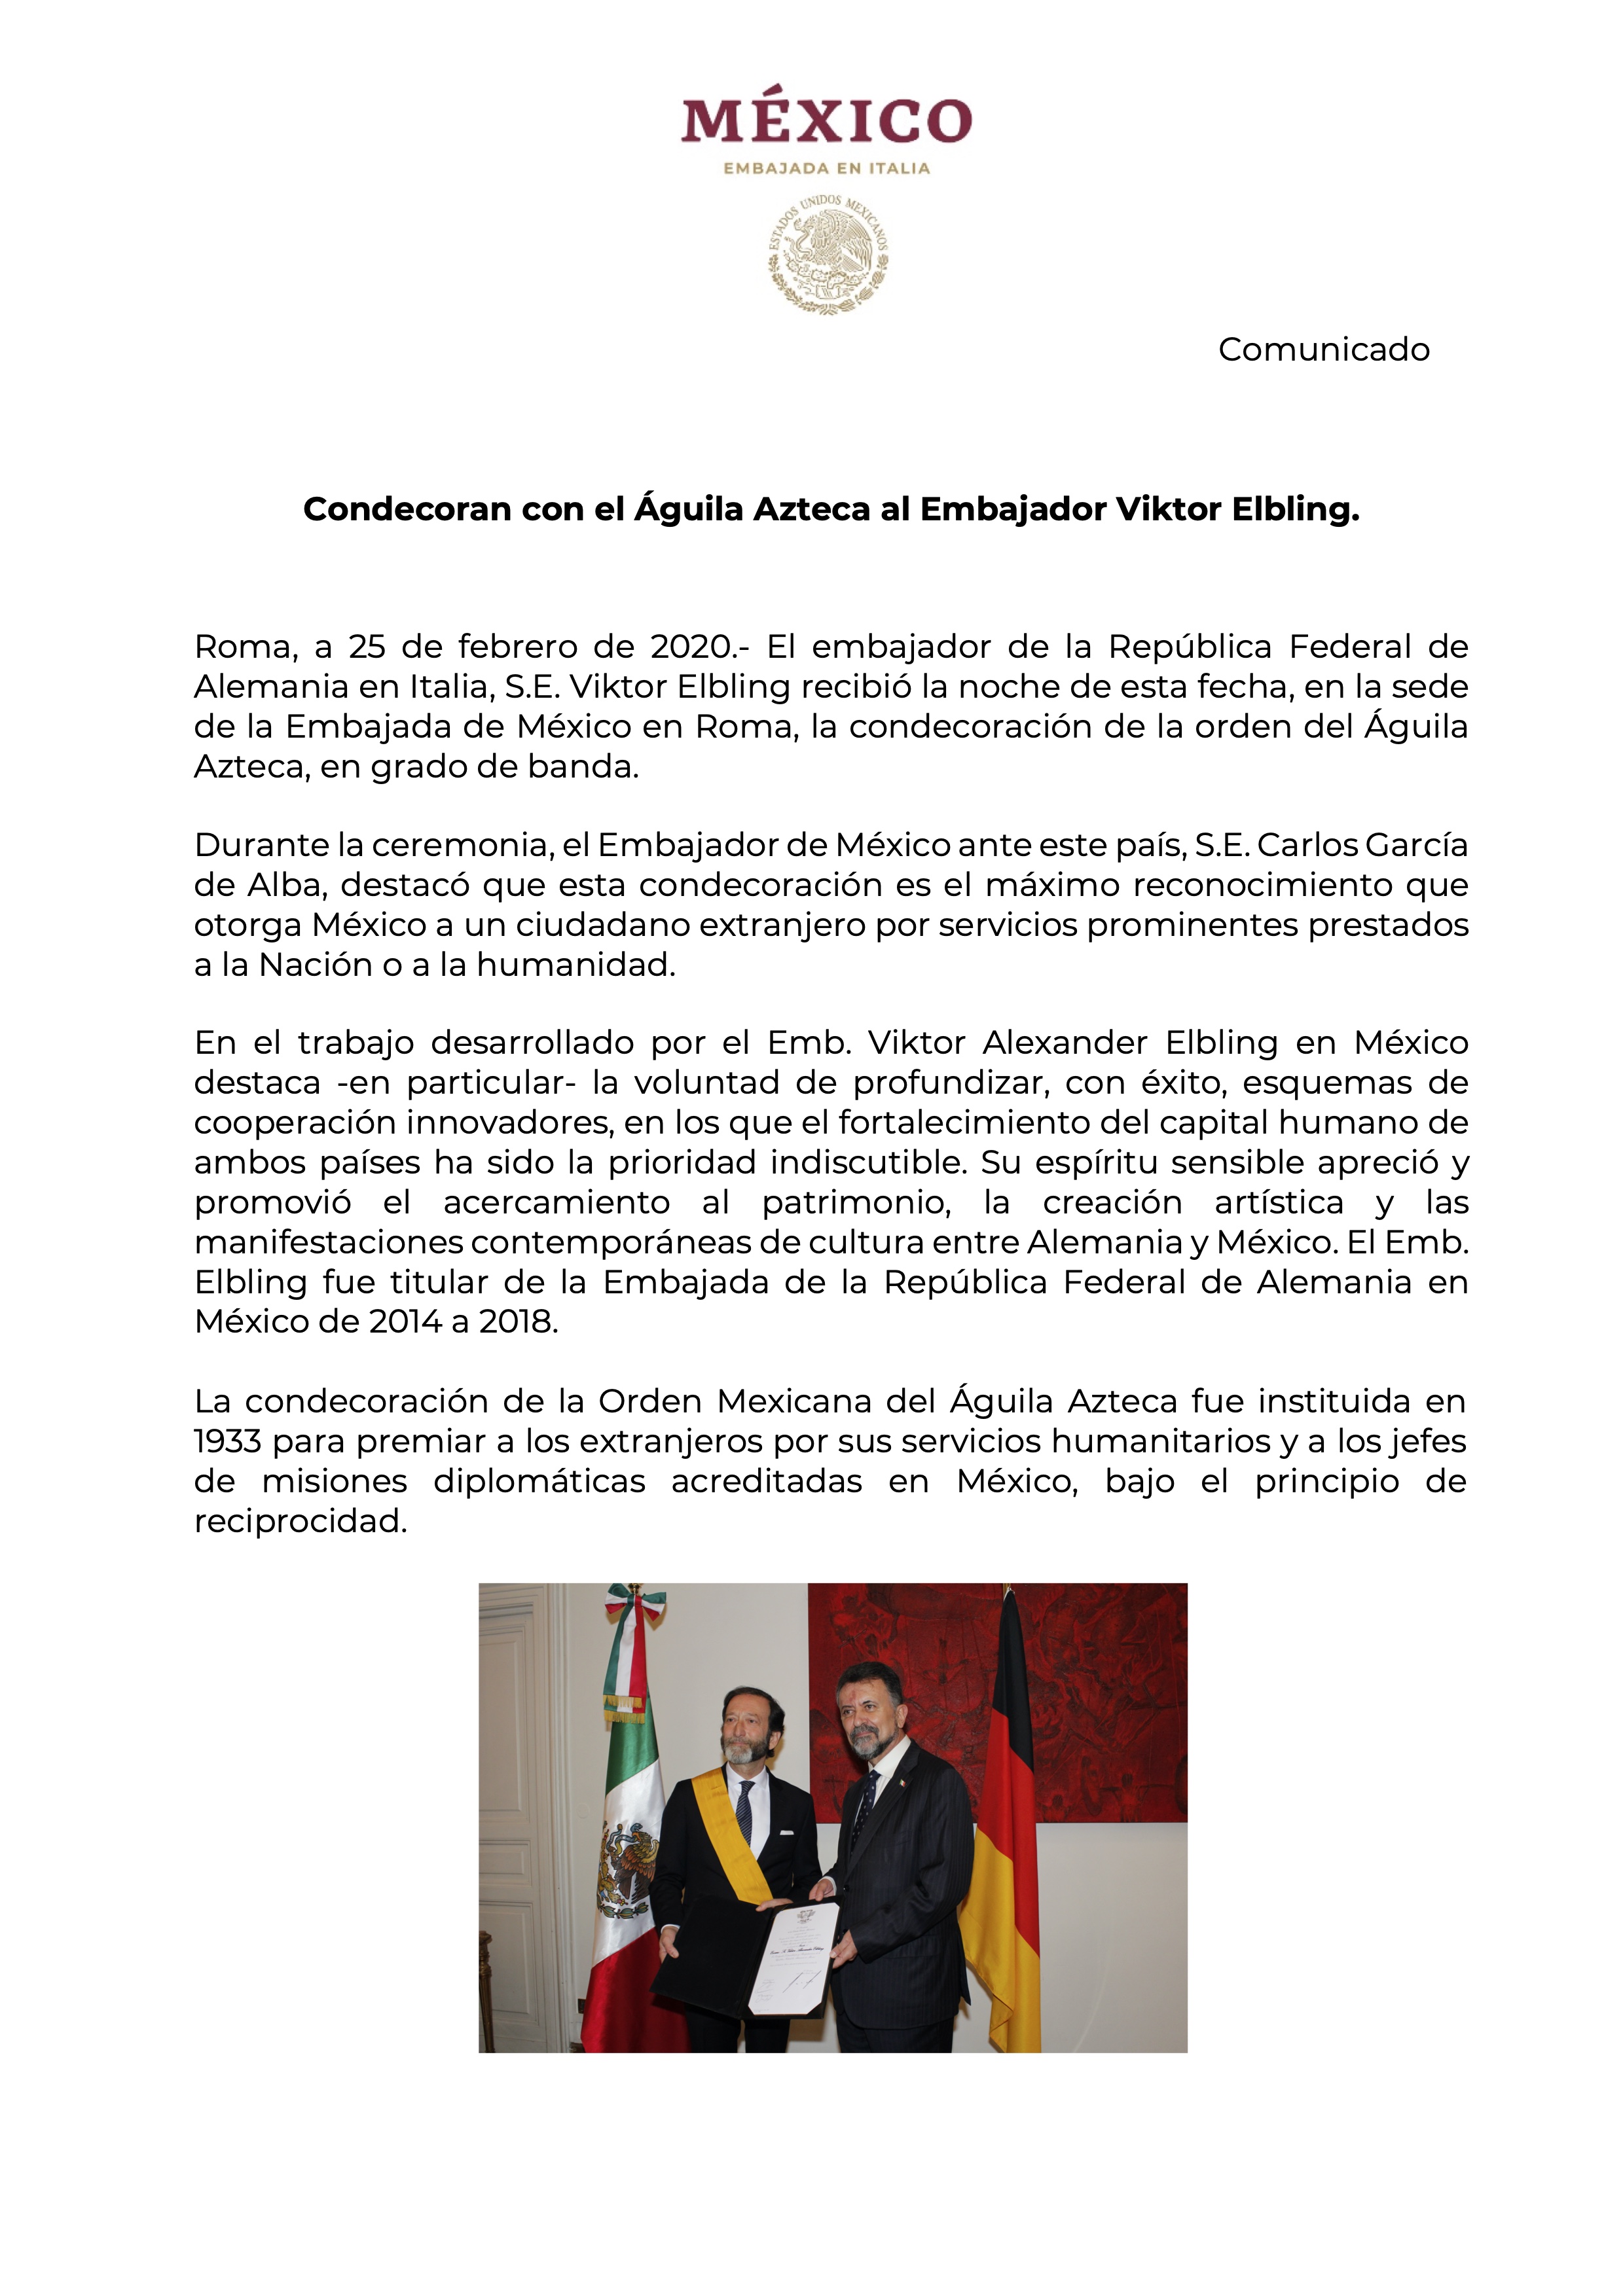 Condecoran con el Águila Azteca al Embajador Viktor Elbling